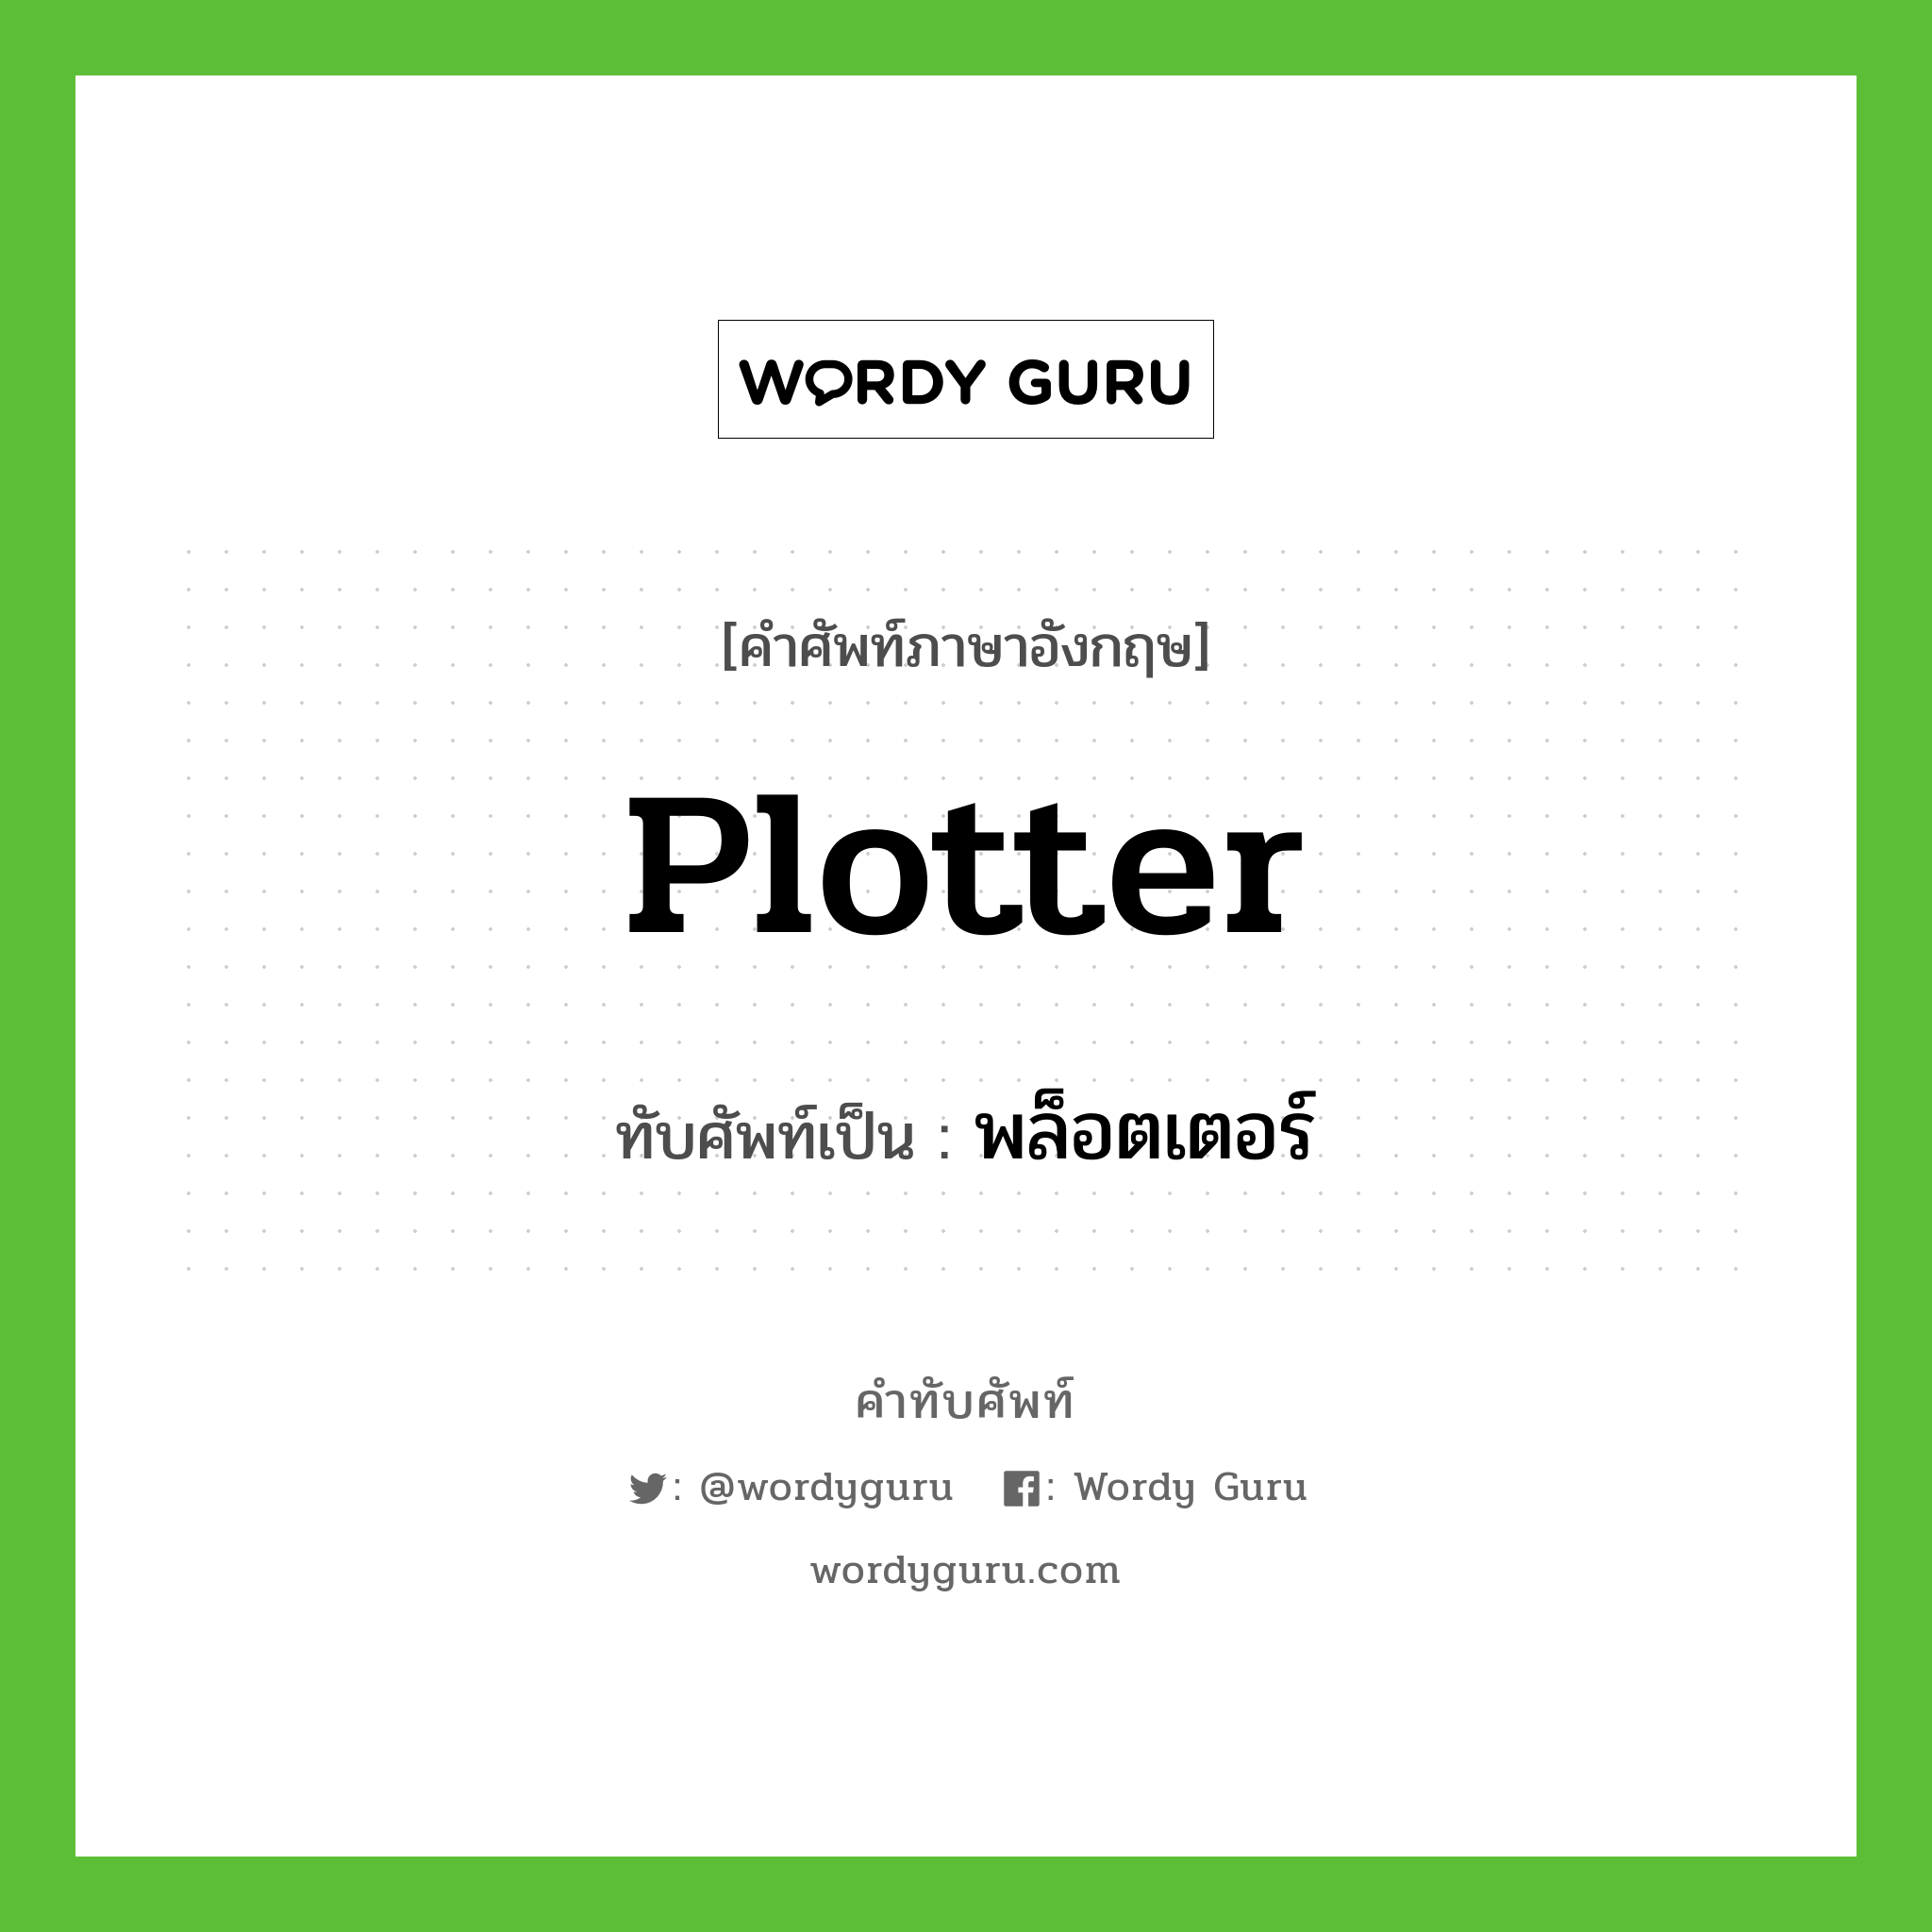 plotter เขียนเป็นคำไทยว่าอะไร?, คำศัพท์ภาษาอังกฤษ plotter ทับศัพท์เป็น พล็อตเตอร์